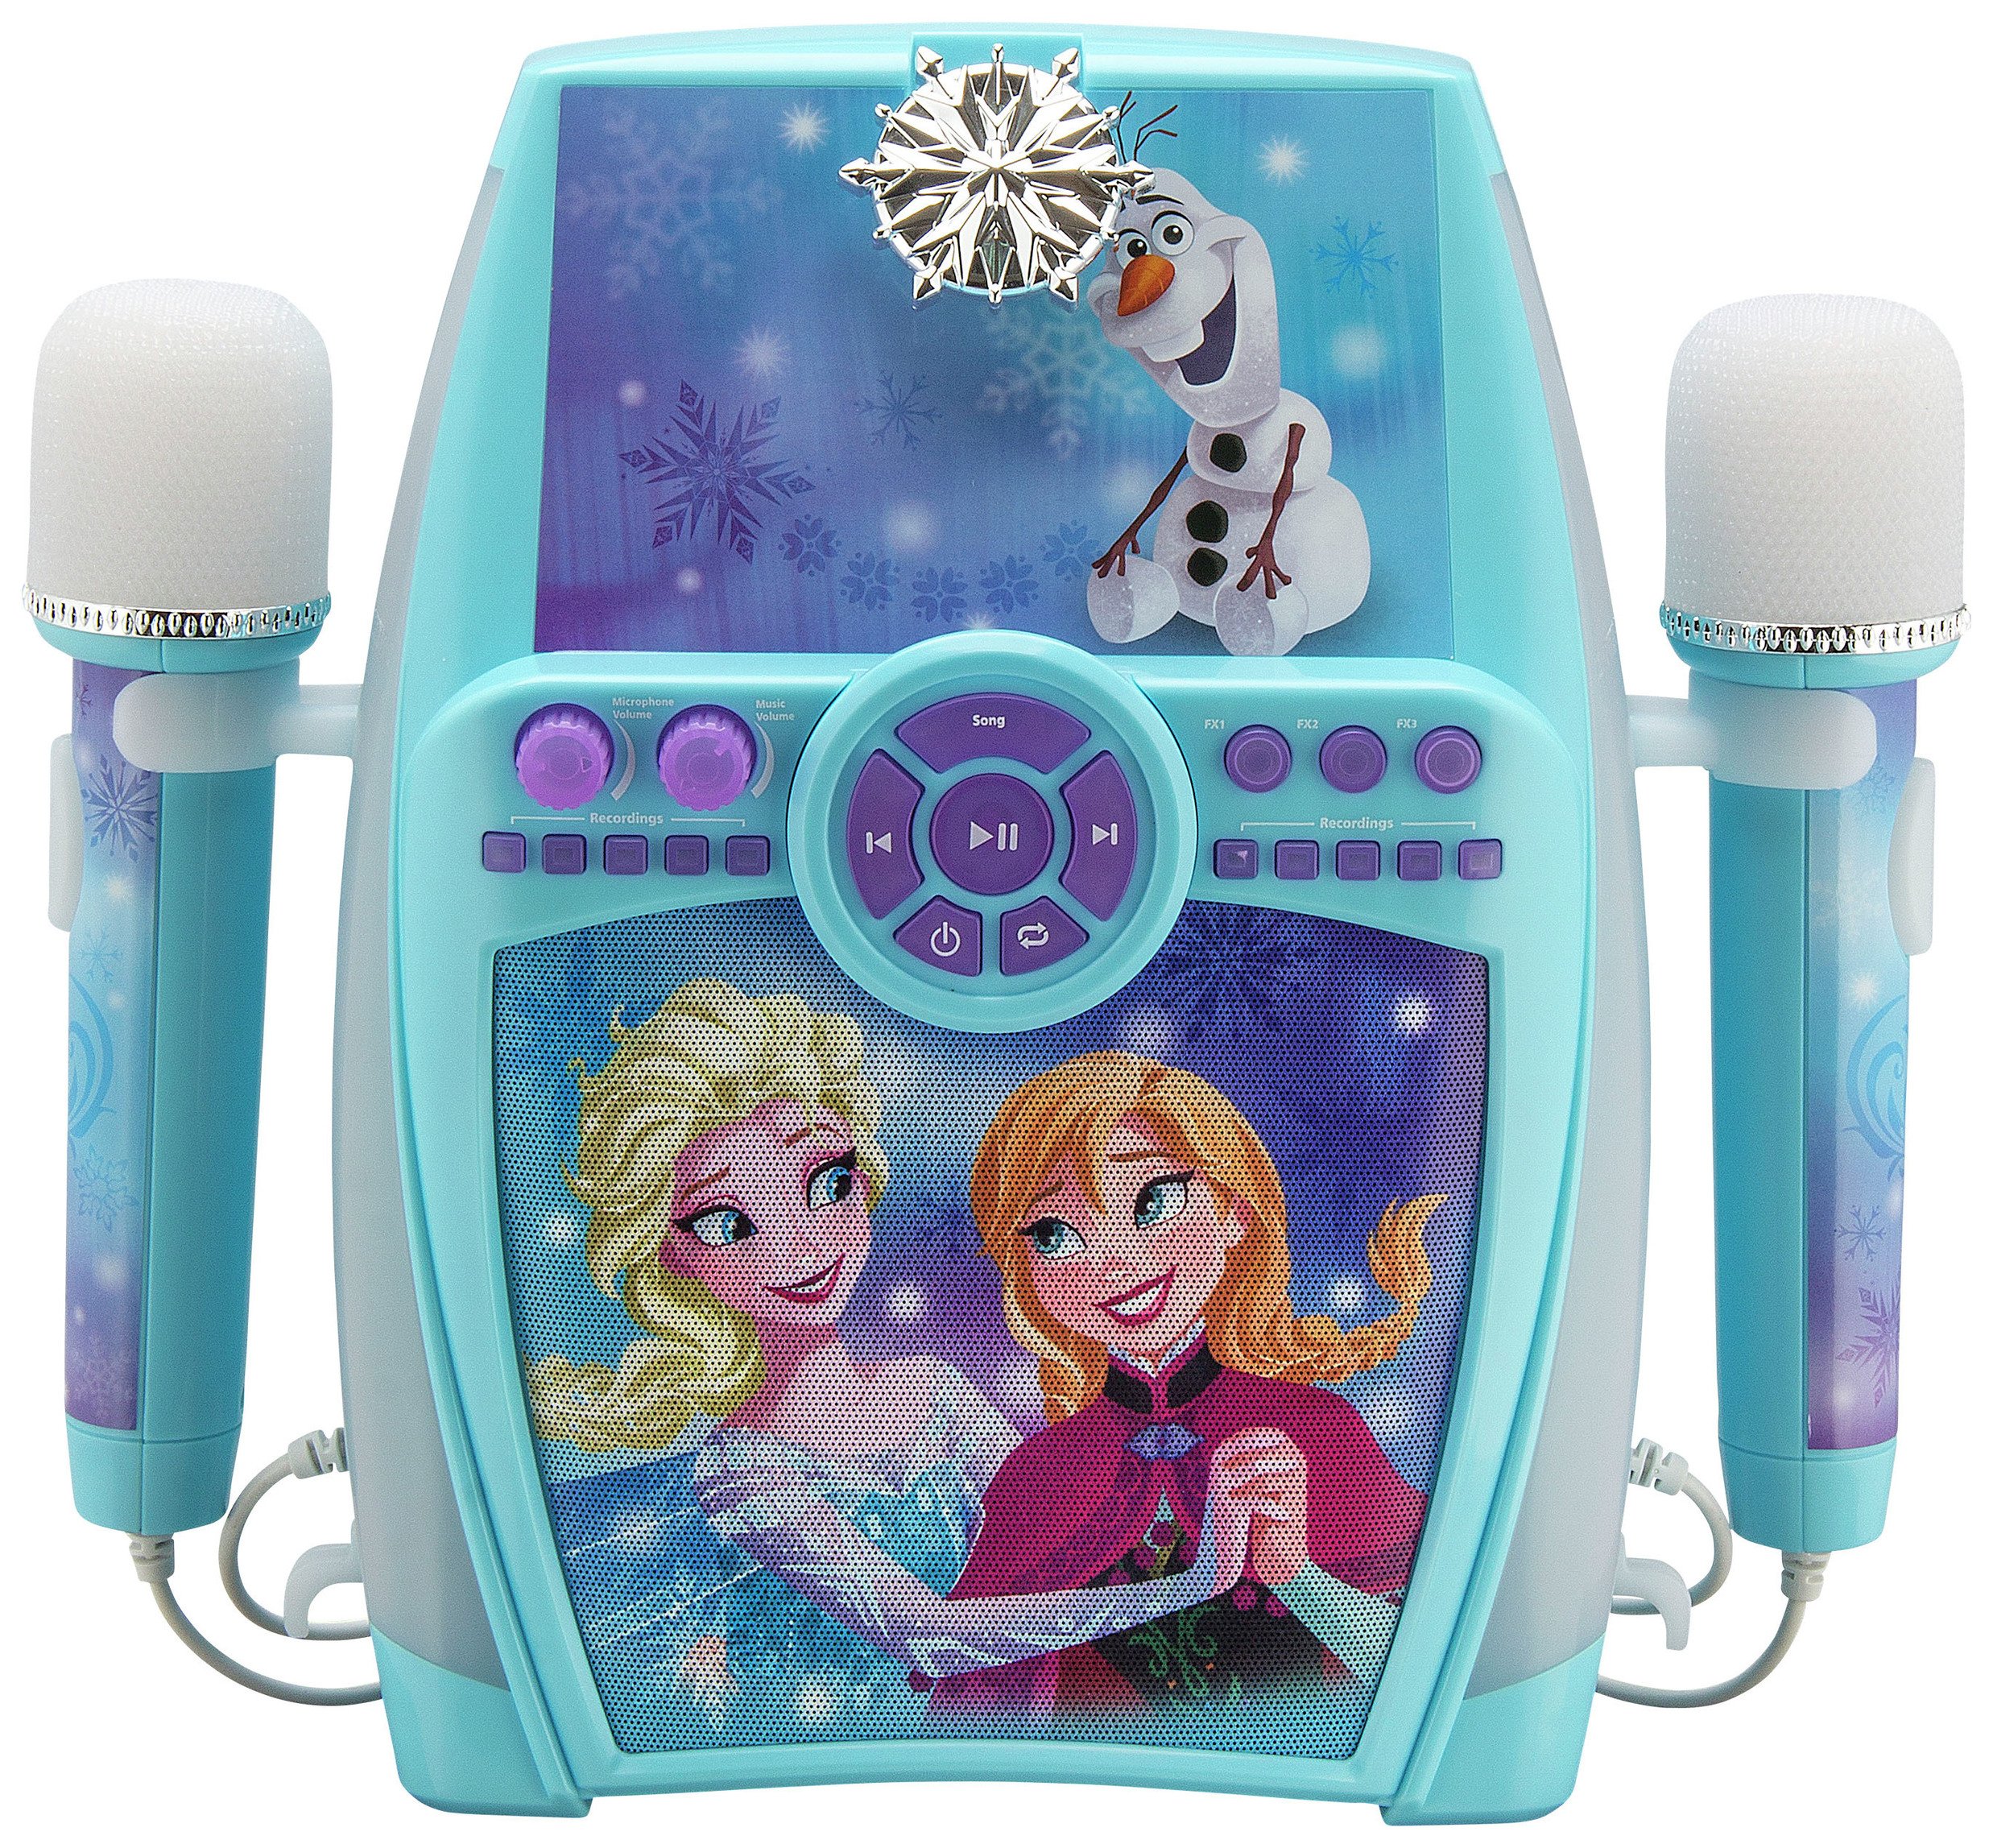 Disney Frozen Karaoke with Dual Microphones